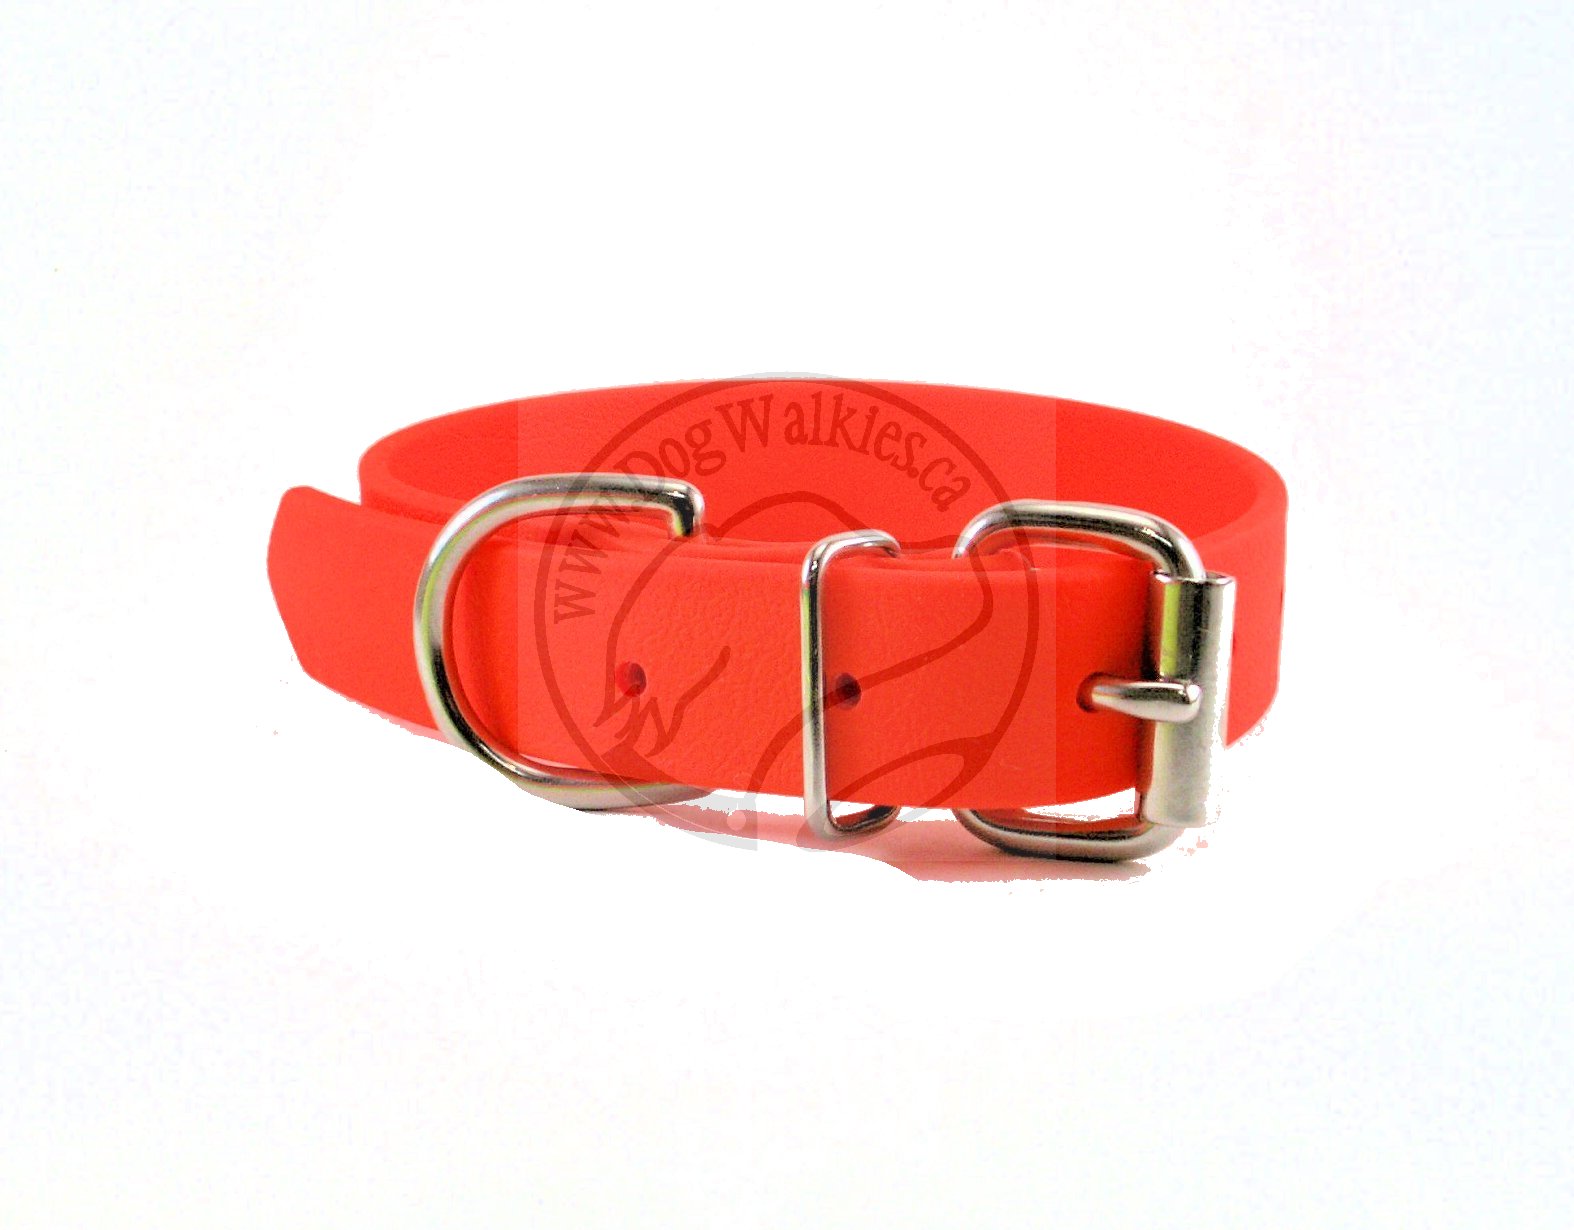 Neon Blaze Orange Biothane Dog Collar - 1 inch (25mm) wide